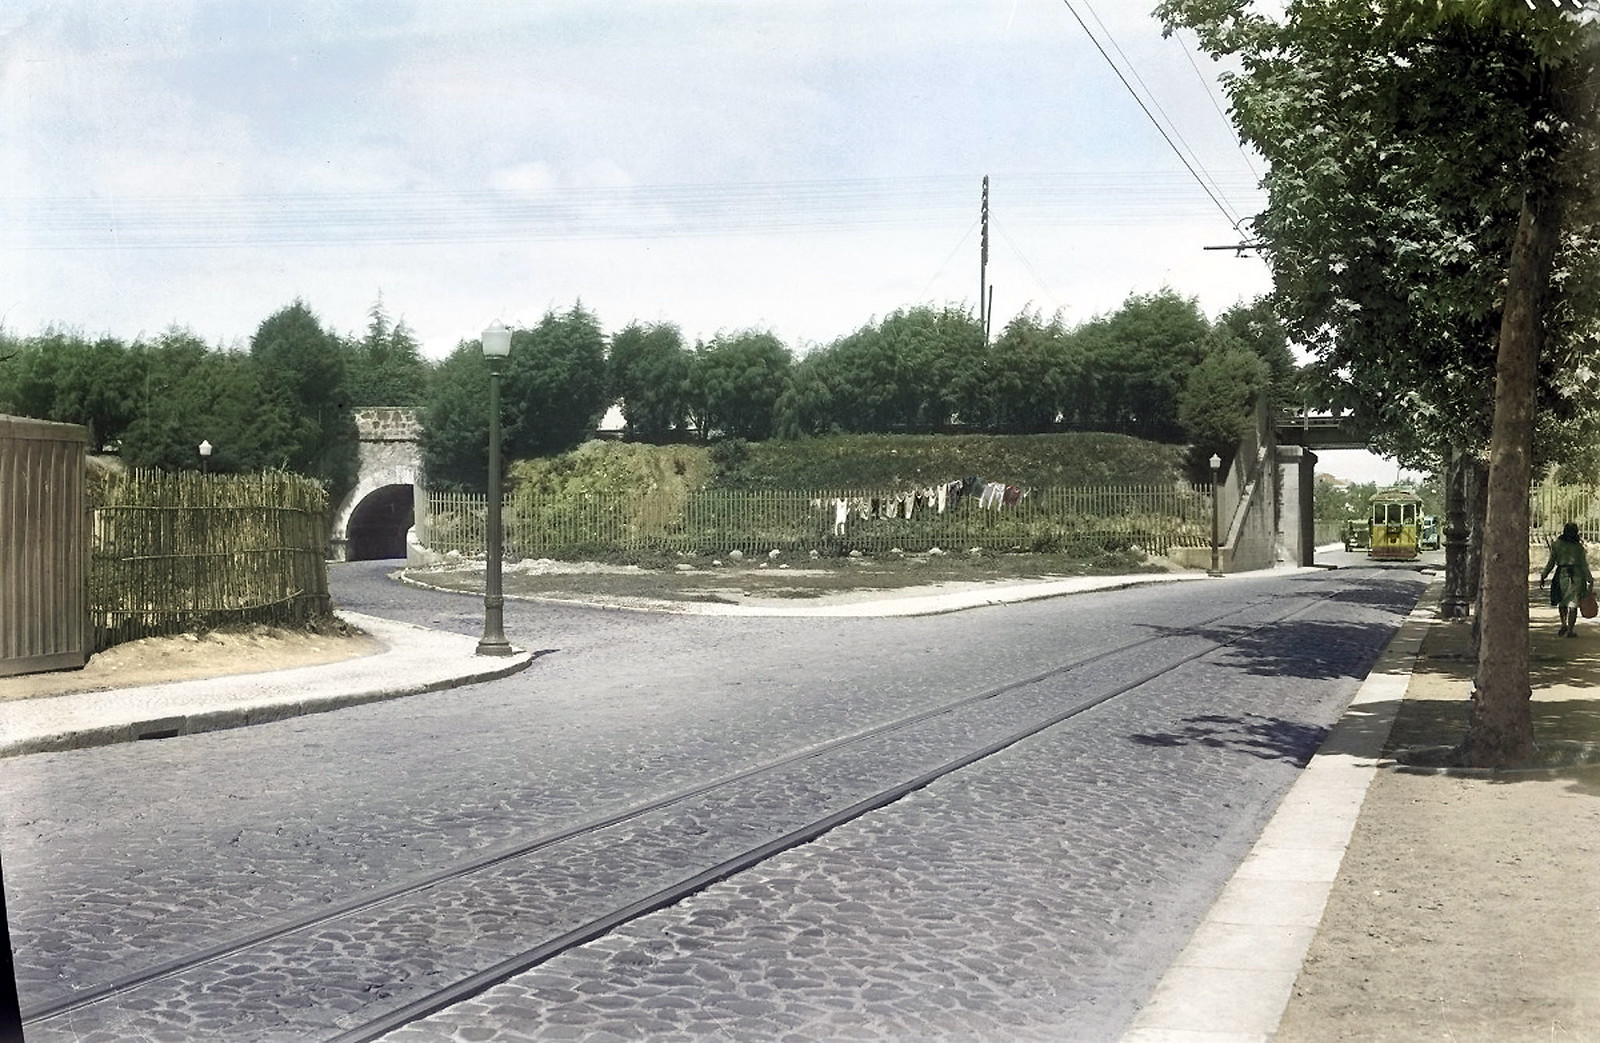 Viaducto ferroviário da Av. da República, Entre Campos, 1944. Eduardo Portugal, in archivo photographico da C.M.L.